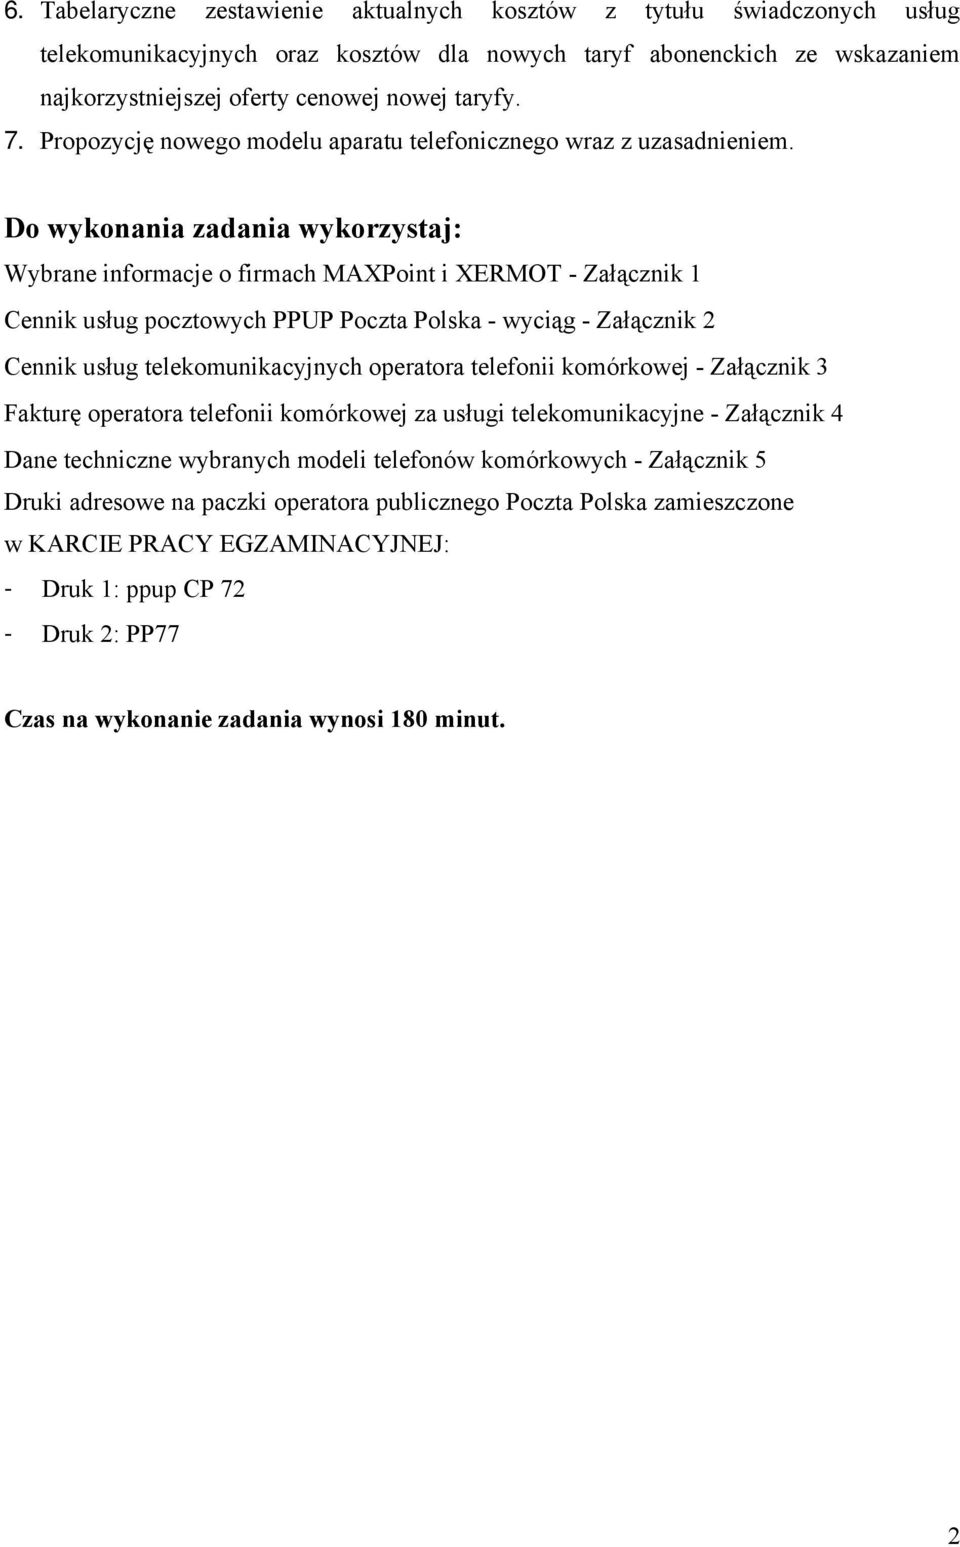 Do wykonania zadania wykorzystaj: Wybrane informacje o firmach MAXPoint i XERMOT - Załącznik 1 Cennik usług pocztowych PPUP Poczta Polska - wyciąg - Załącznik 2 Cennik usług telekomunikacyjnych